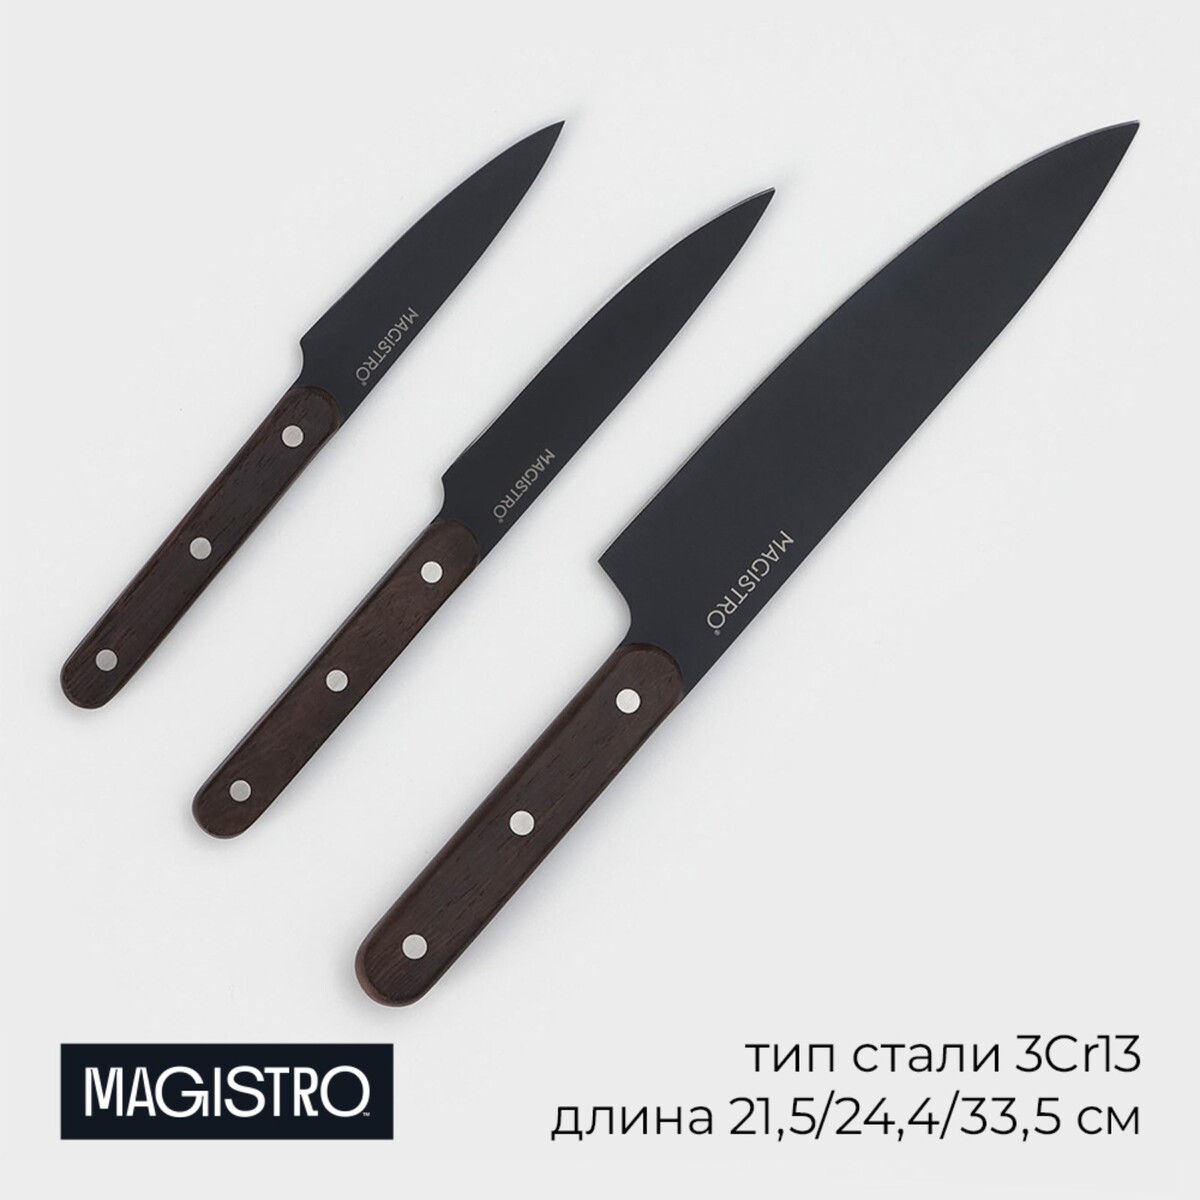 Набор кухонных ножей magistro dark wood, 3 предмета: лезвие 10,2 см, 12,7 см, 19 см, цвет черный флешка e 310 dark wood 16 гб usb2 0 чт до 25 мб с зап до 15 мб с зеленая подсветка